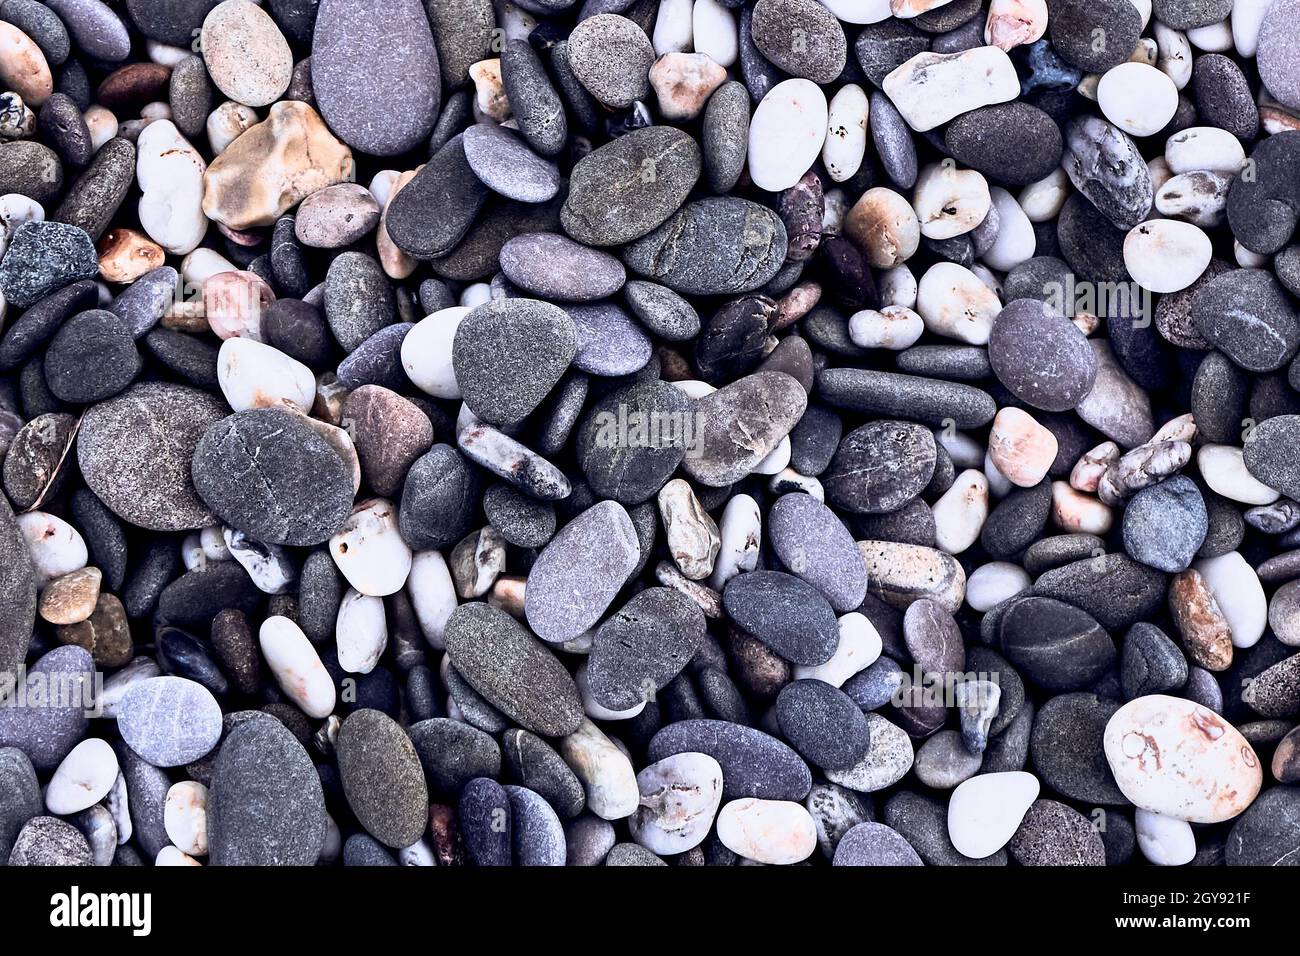 Hintergrund von Meereskieseln, Draufsicht, Nahaufnahme. Die Textur von Meeressteinen. Grau-lila, weiße, gelbe Steine auf dem Meer. Natürliche Materialien und Farben. Stockfoto